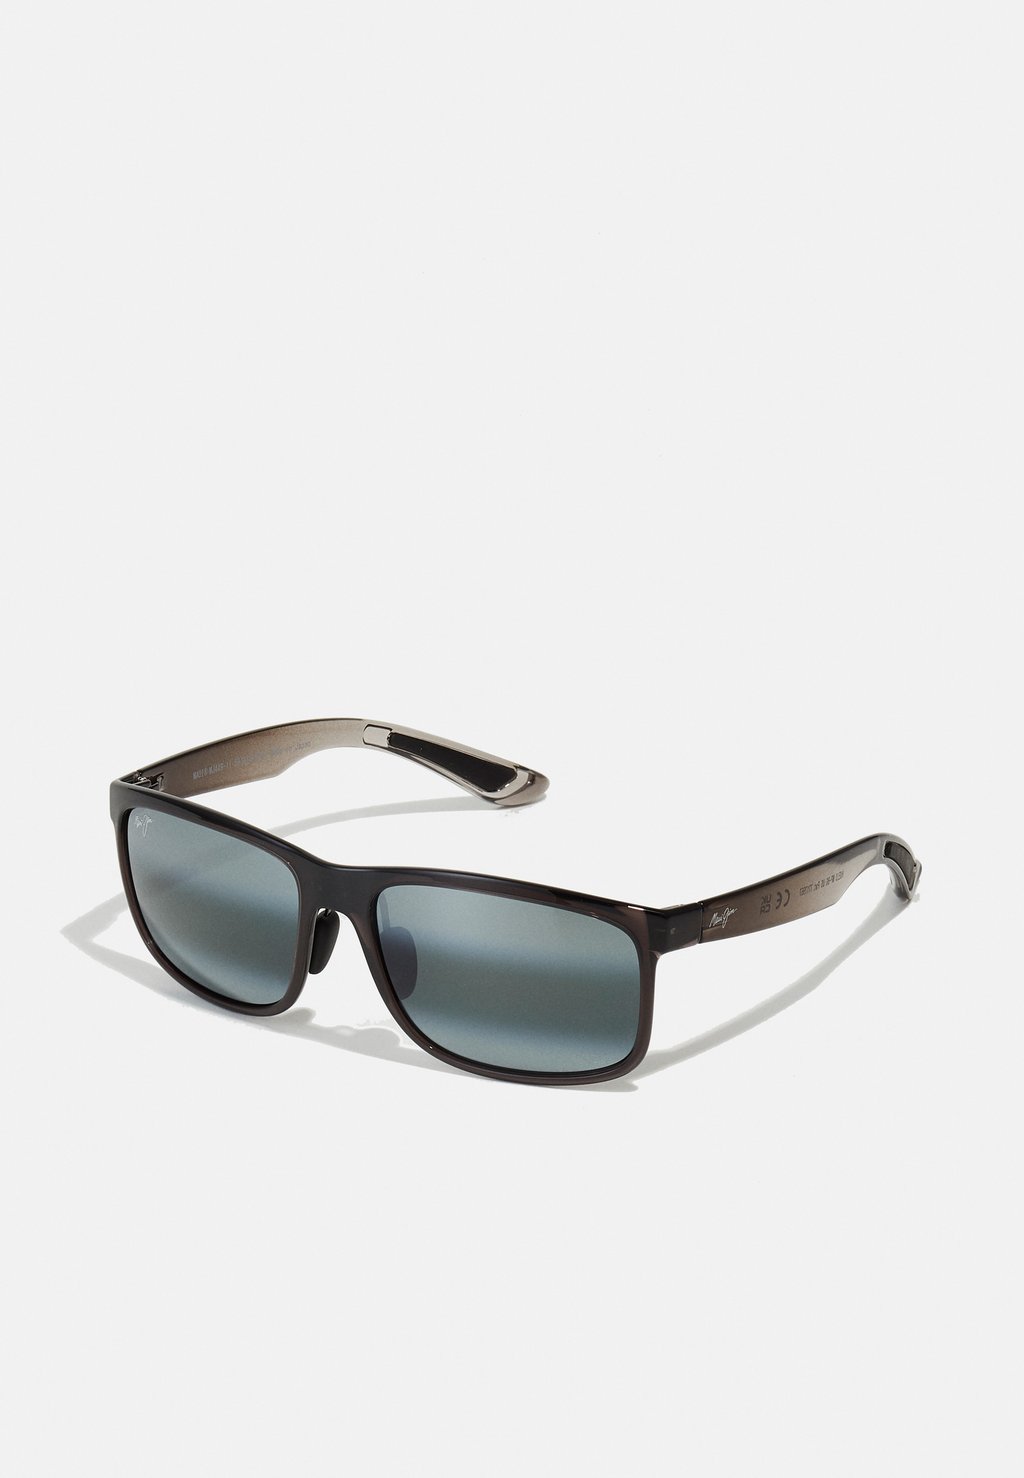 Солнцезащитные очки HUELO Maui Jim, цвет translucent grey